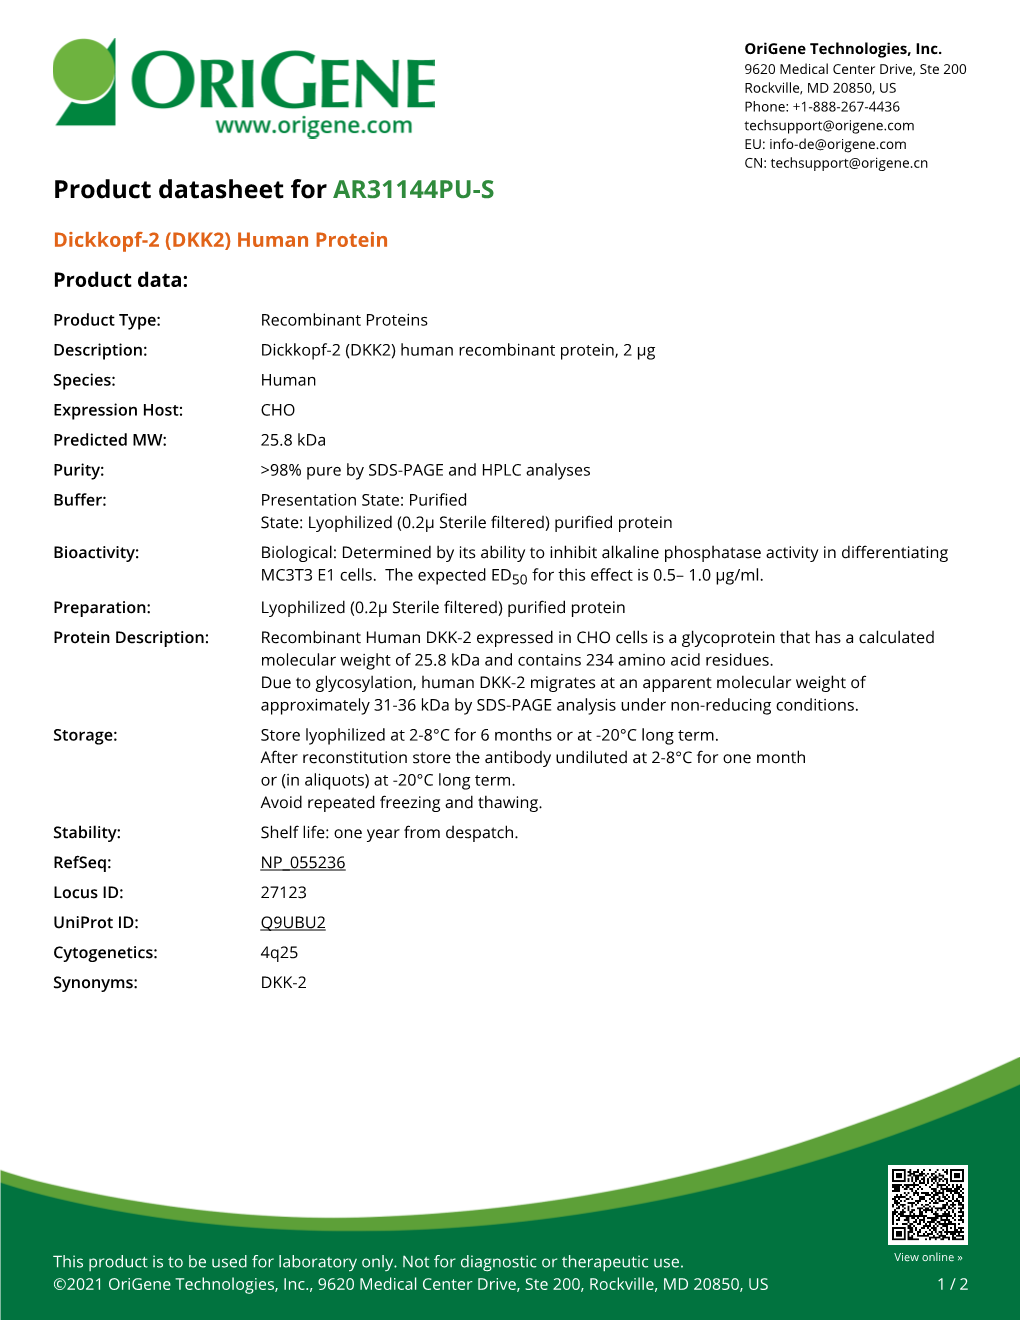 Dickkopf-2 (DKK2) Human Protein – AR31144PU-S | Origene